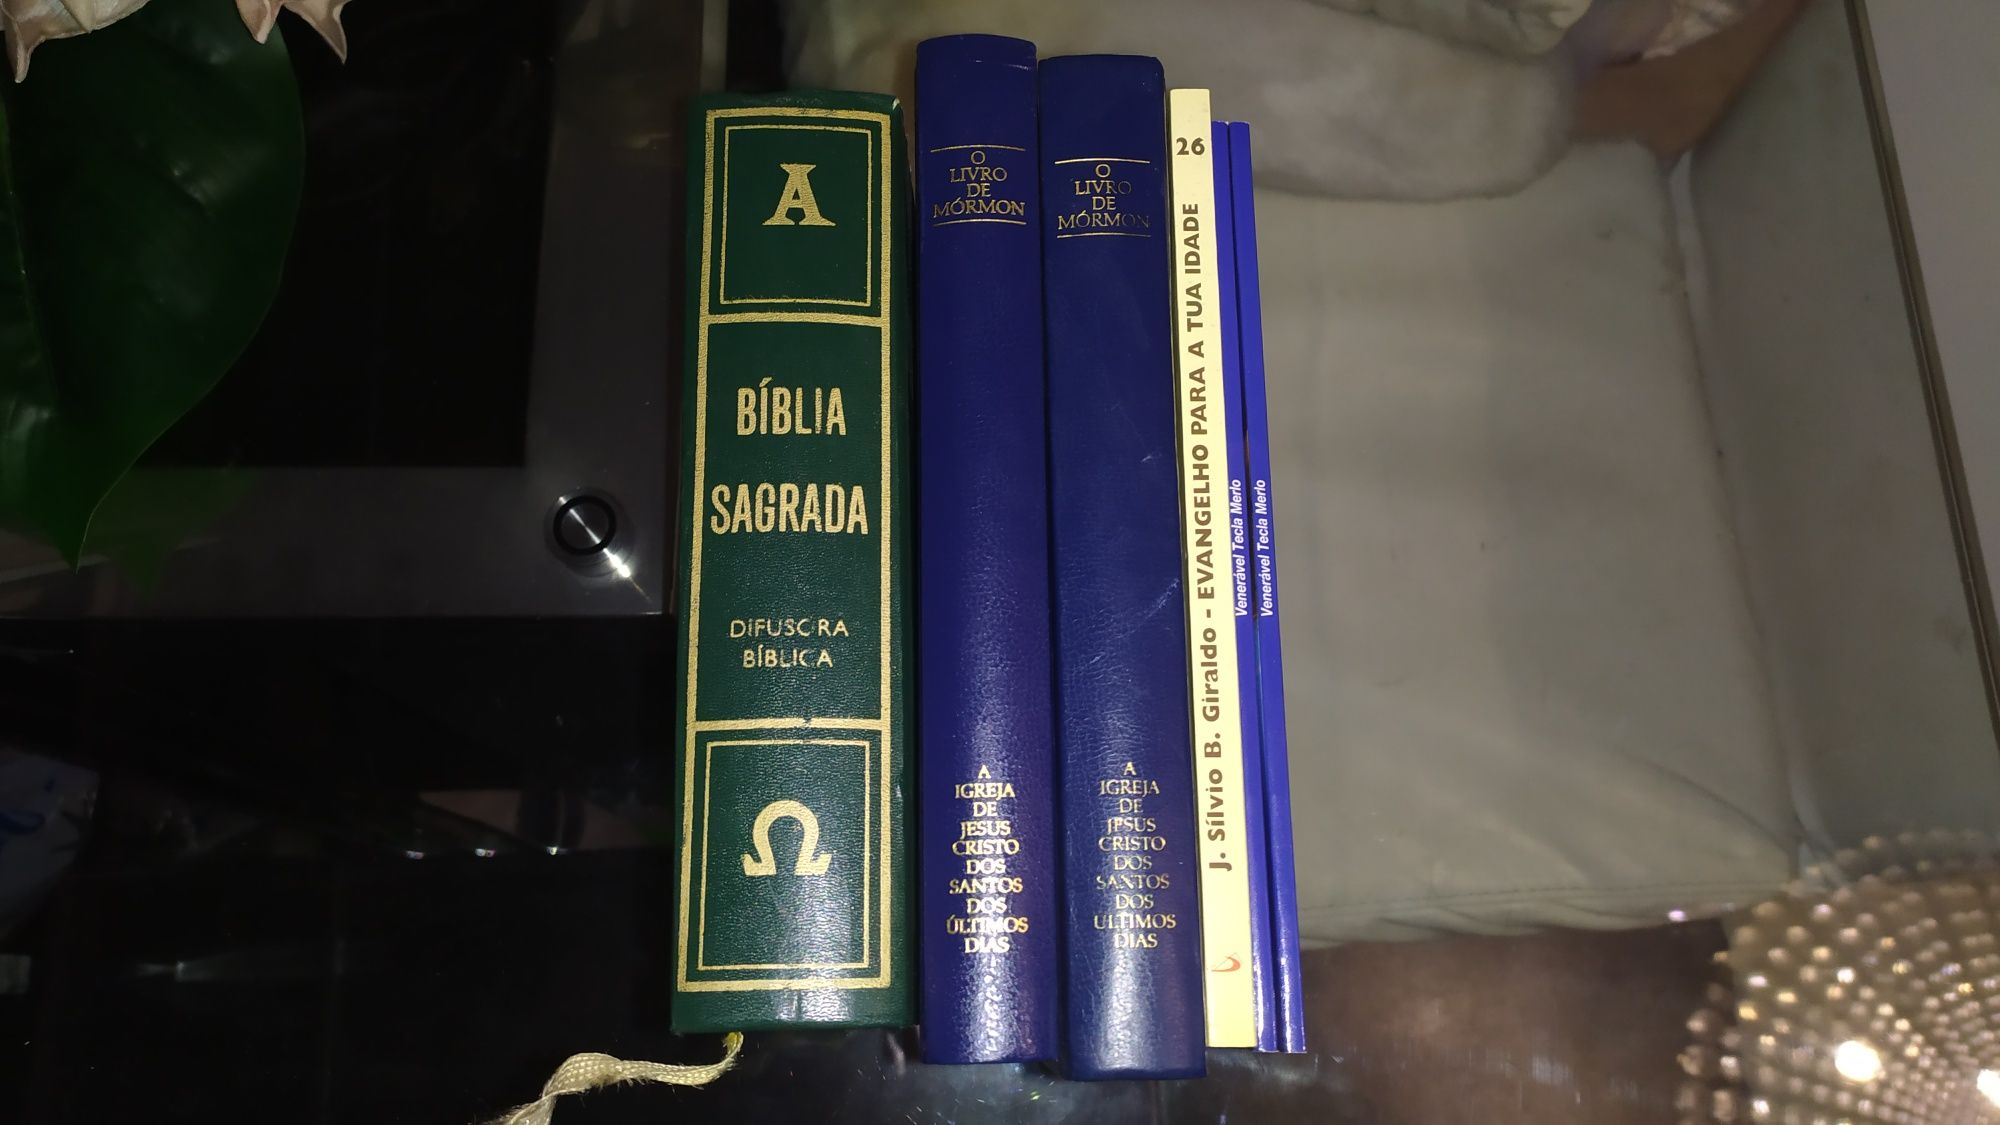 Livros religiosos : bíblia sagrada de 1988 , 2 livro de mórmon etc..